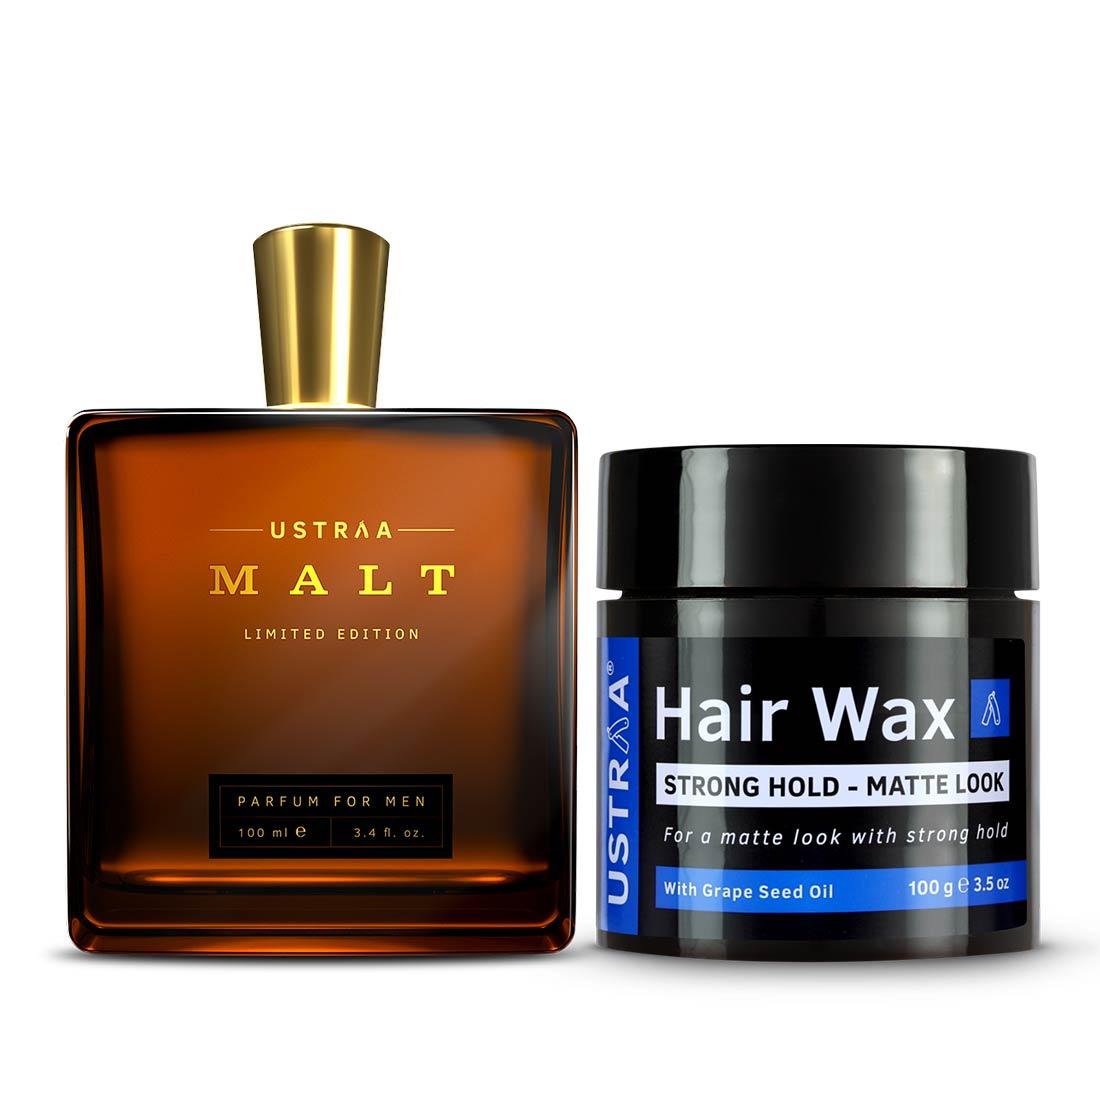 Ustraa Malt Perfume + Hair Wax- Matte Look Combo For Men: (Set of 2)